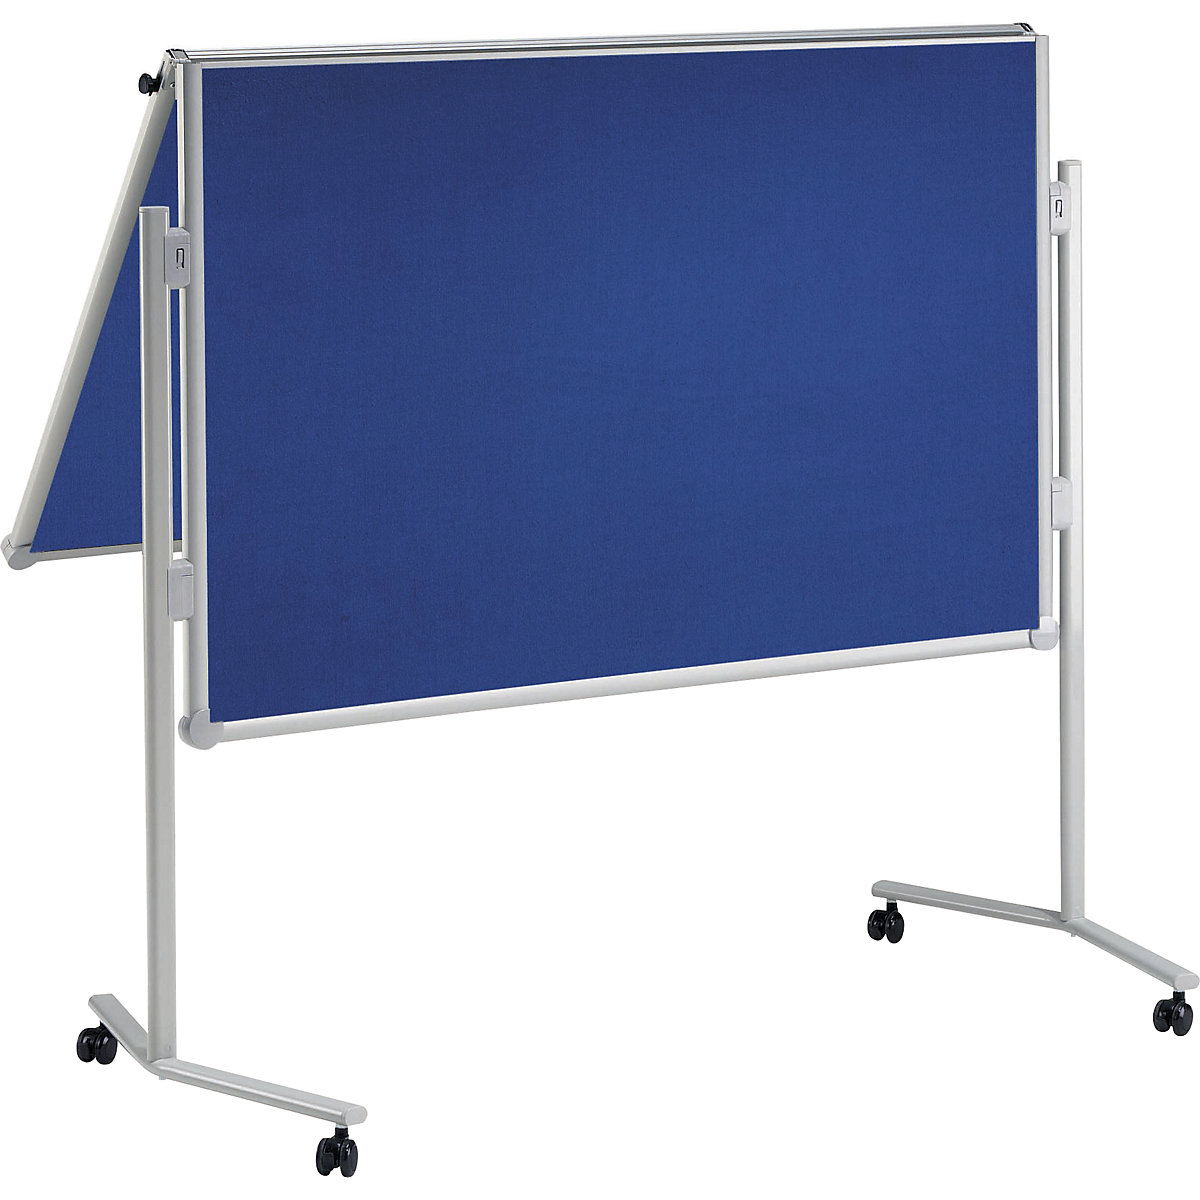 MAUL Moderationstafel, klappbar, Textil-Oberfläche, blau, BxH 1200 x 1500 mm